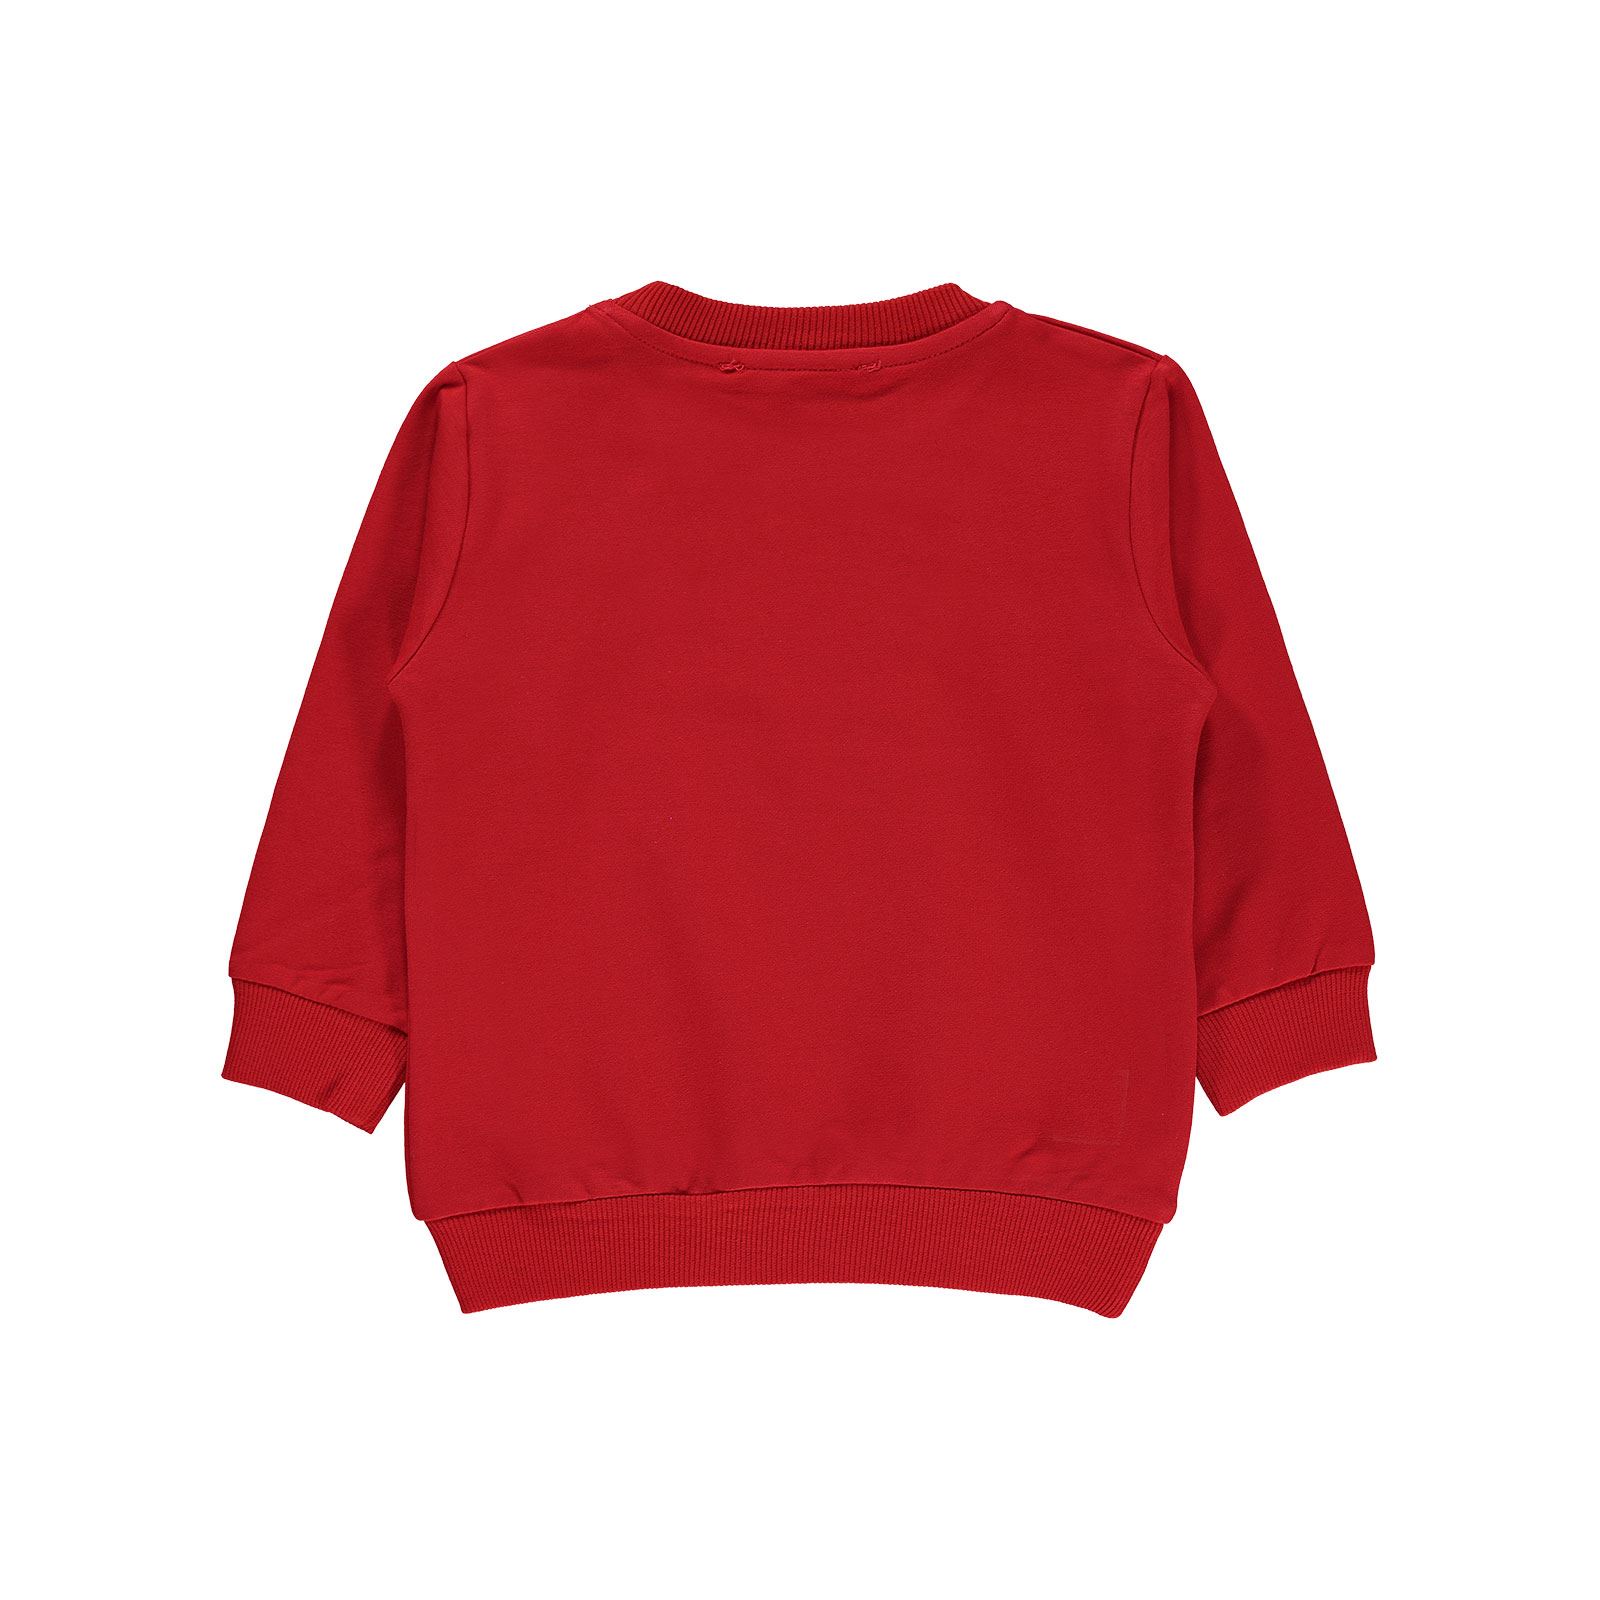 Cix Teen Erkek Çocuk Sweatshirt 2-5 Yaş Kırmızı